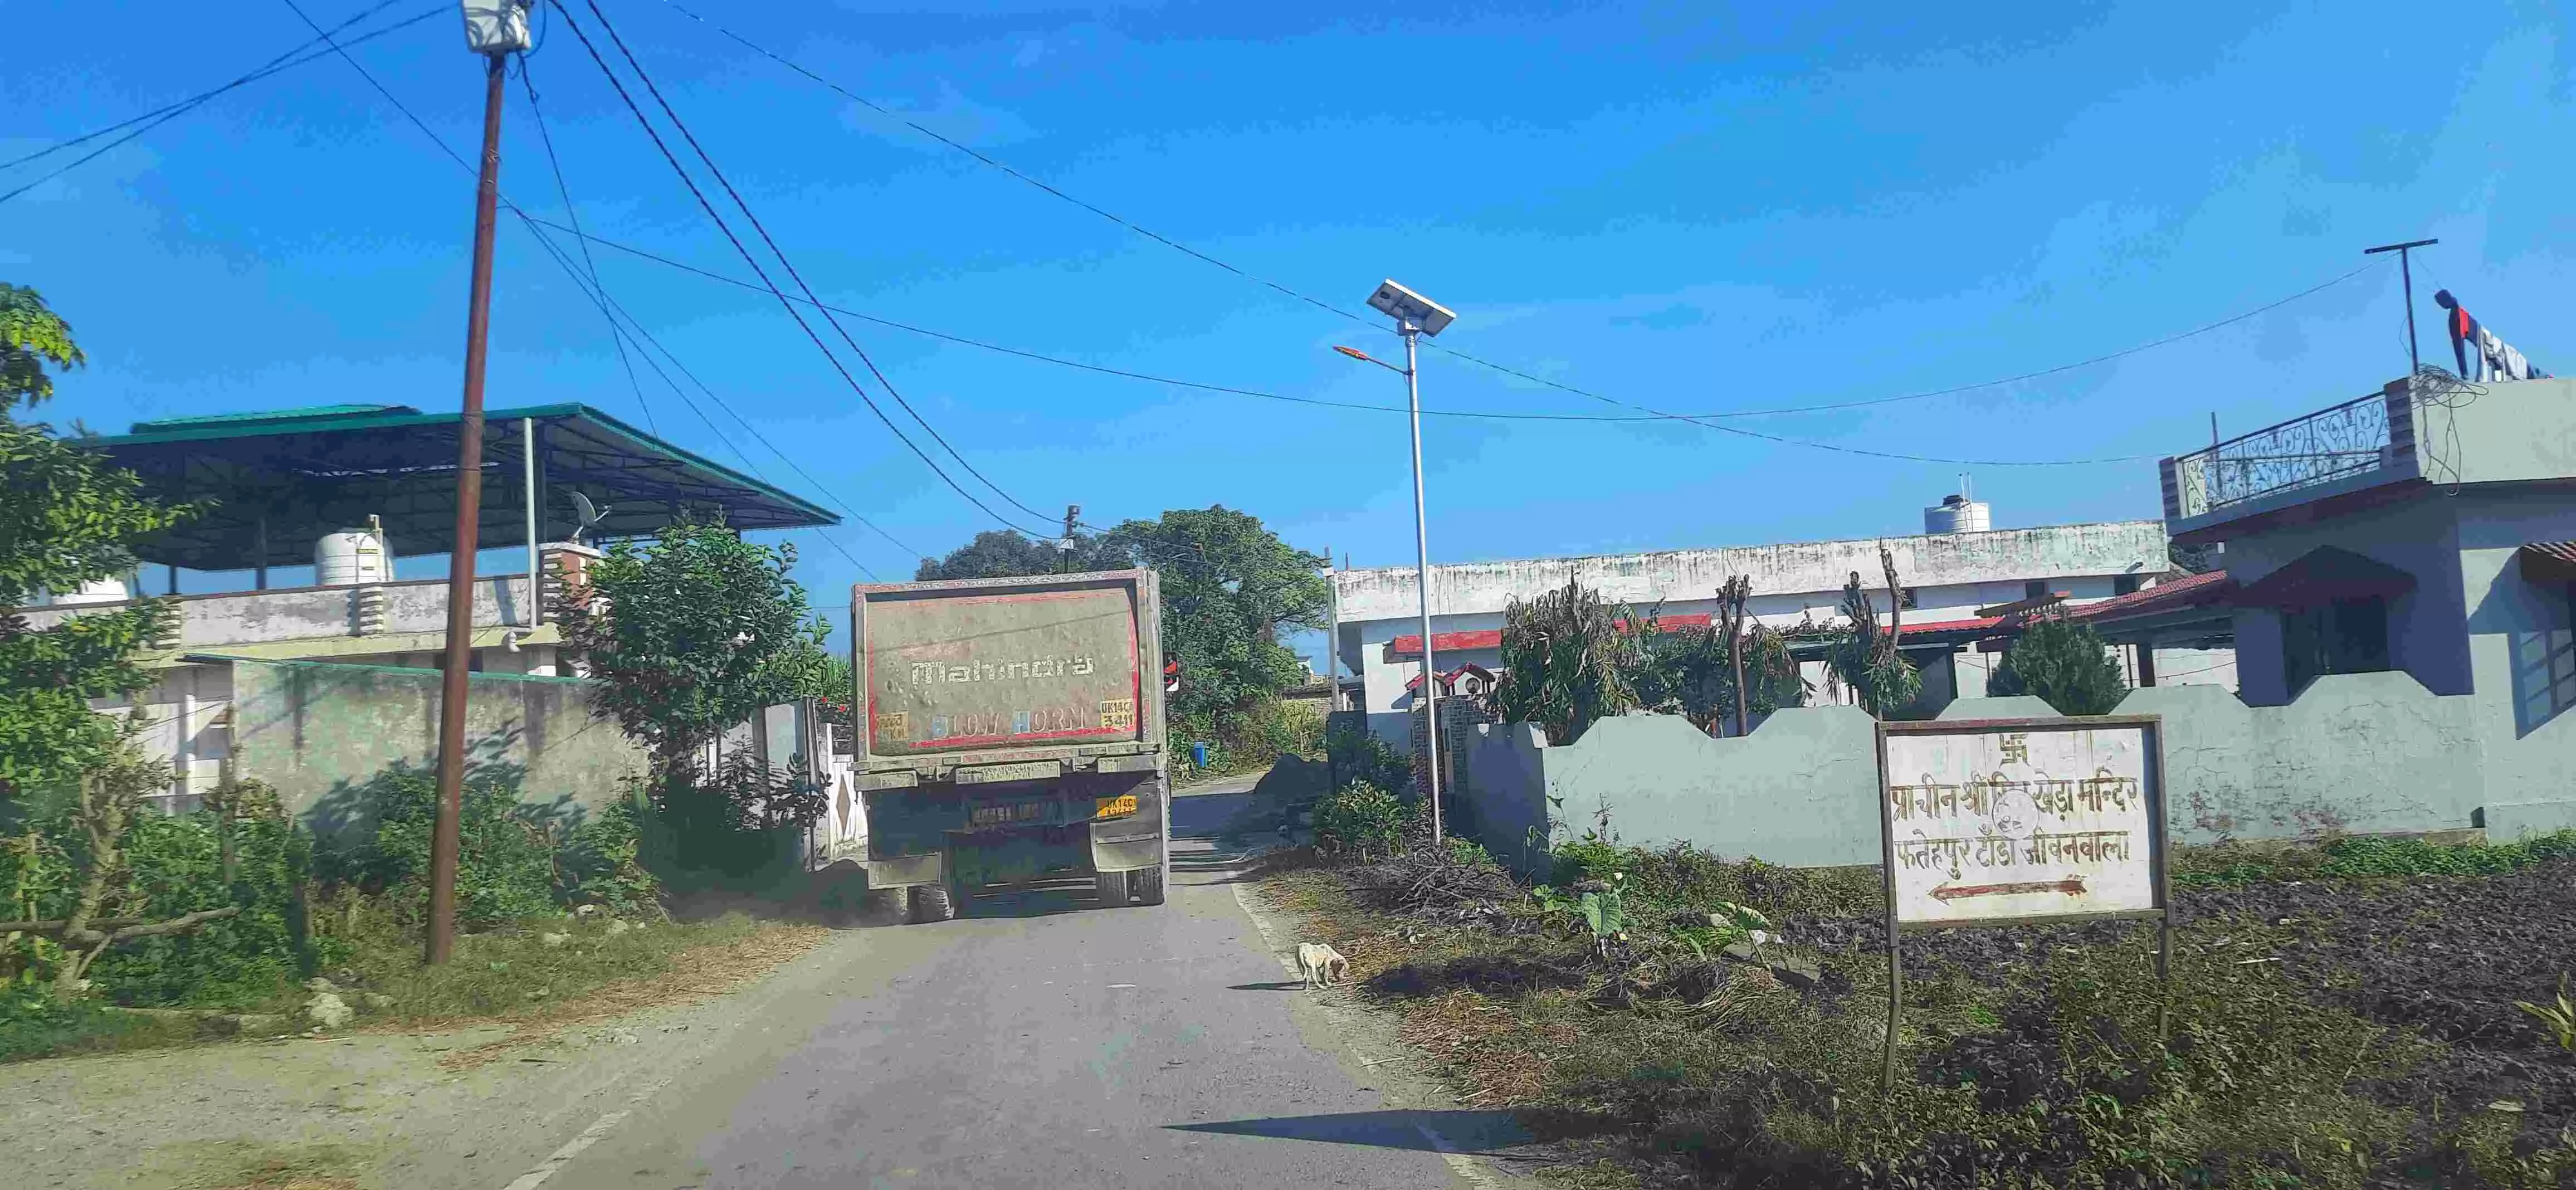 ग्रामीणों का अनुमान है कि स्क्रीनिंग प्लांट्स से ट्रक-ट्रैक्टर समेत 400-500 वाहनों की आवाजाही गांव के रास्तों से दिन-रात होती 